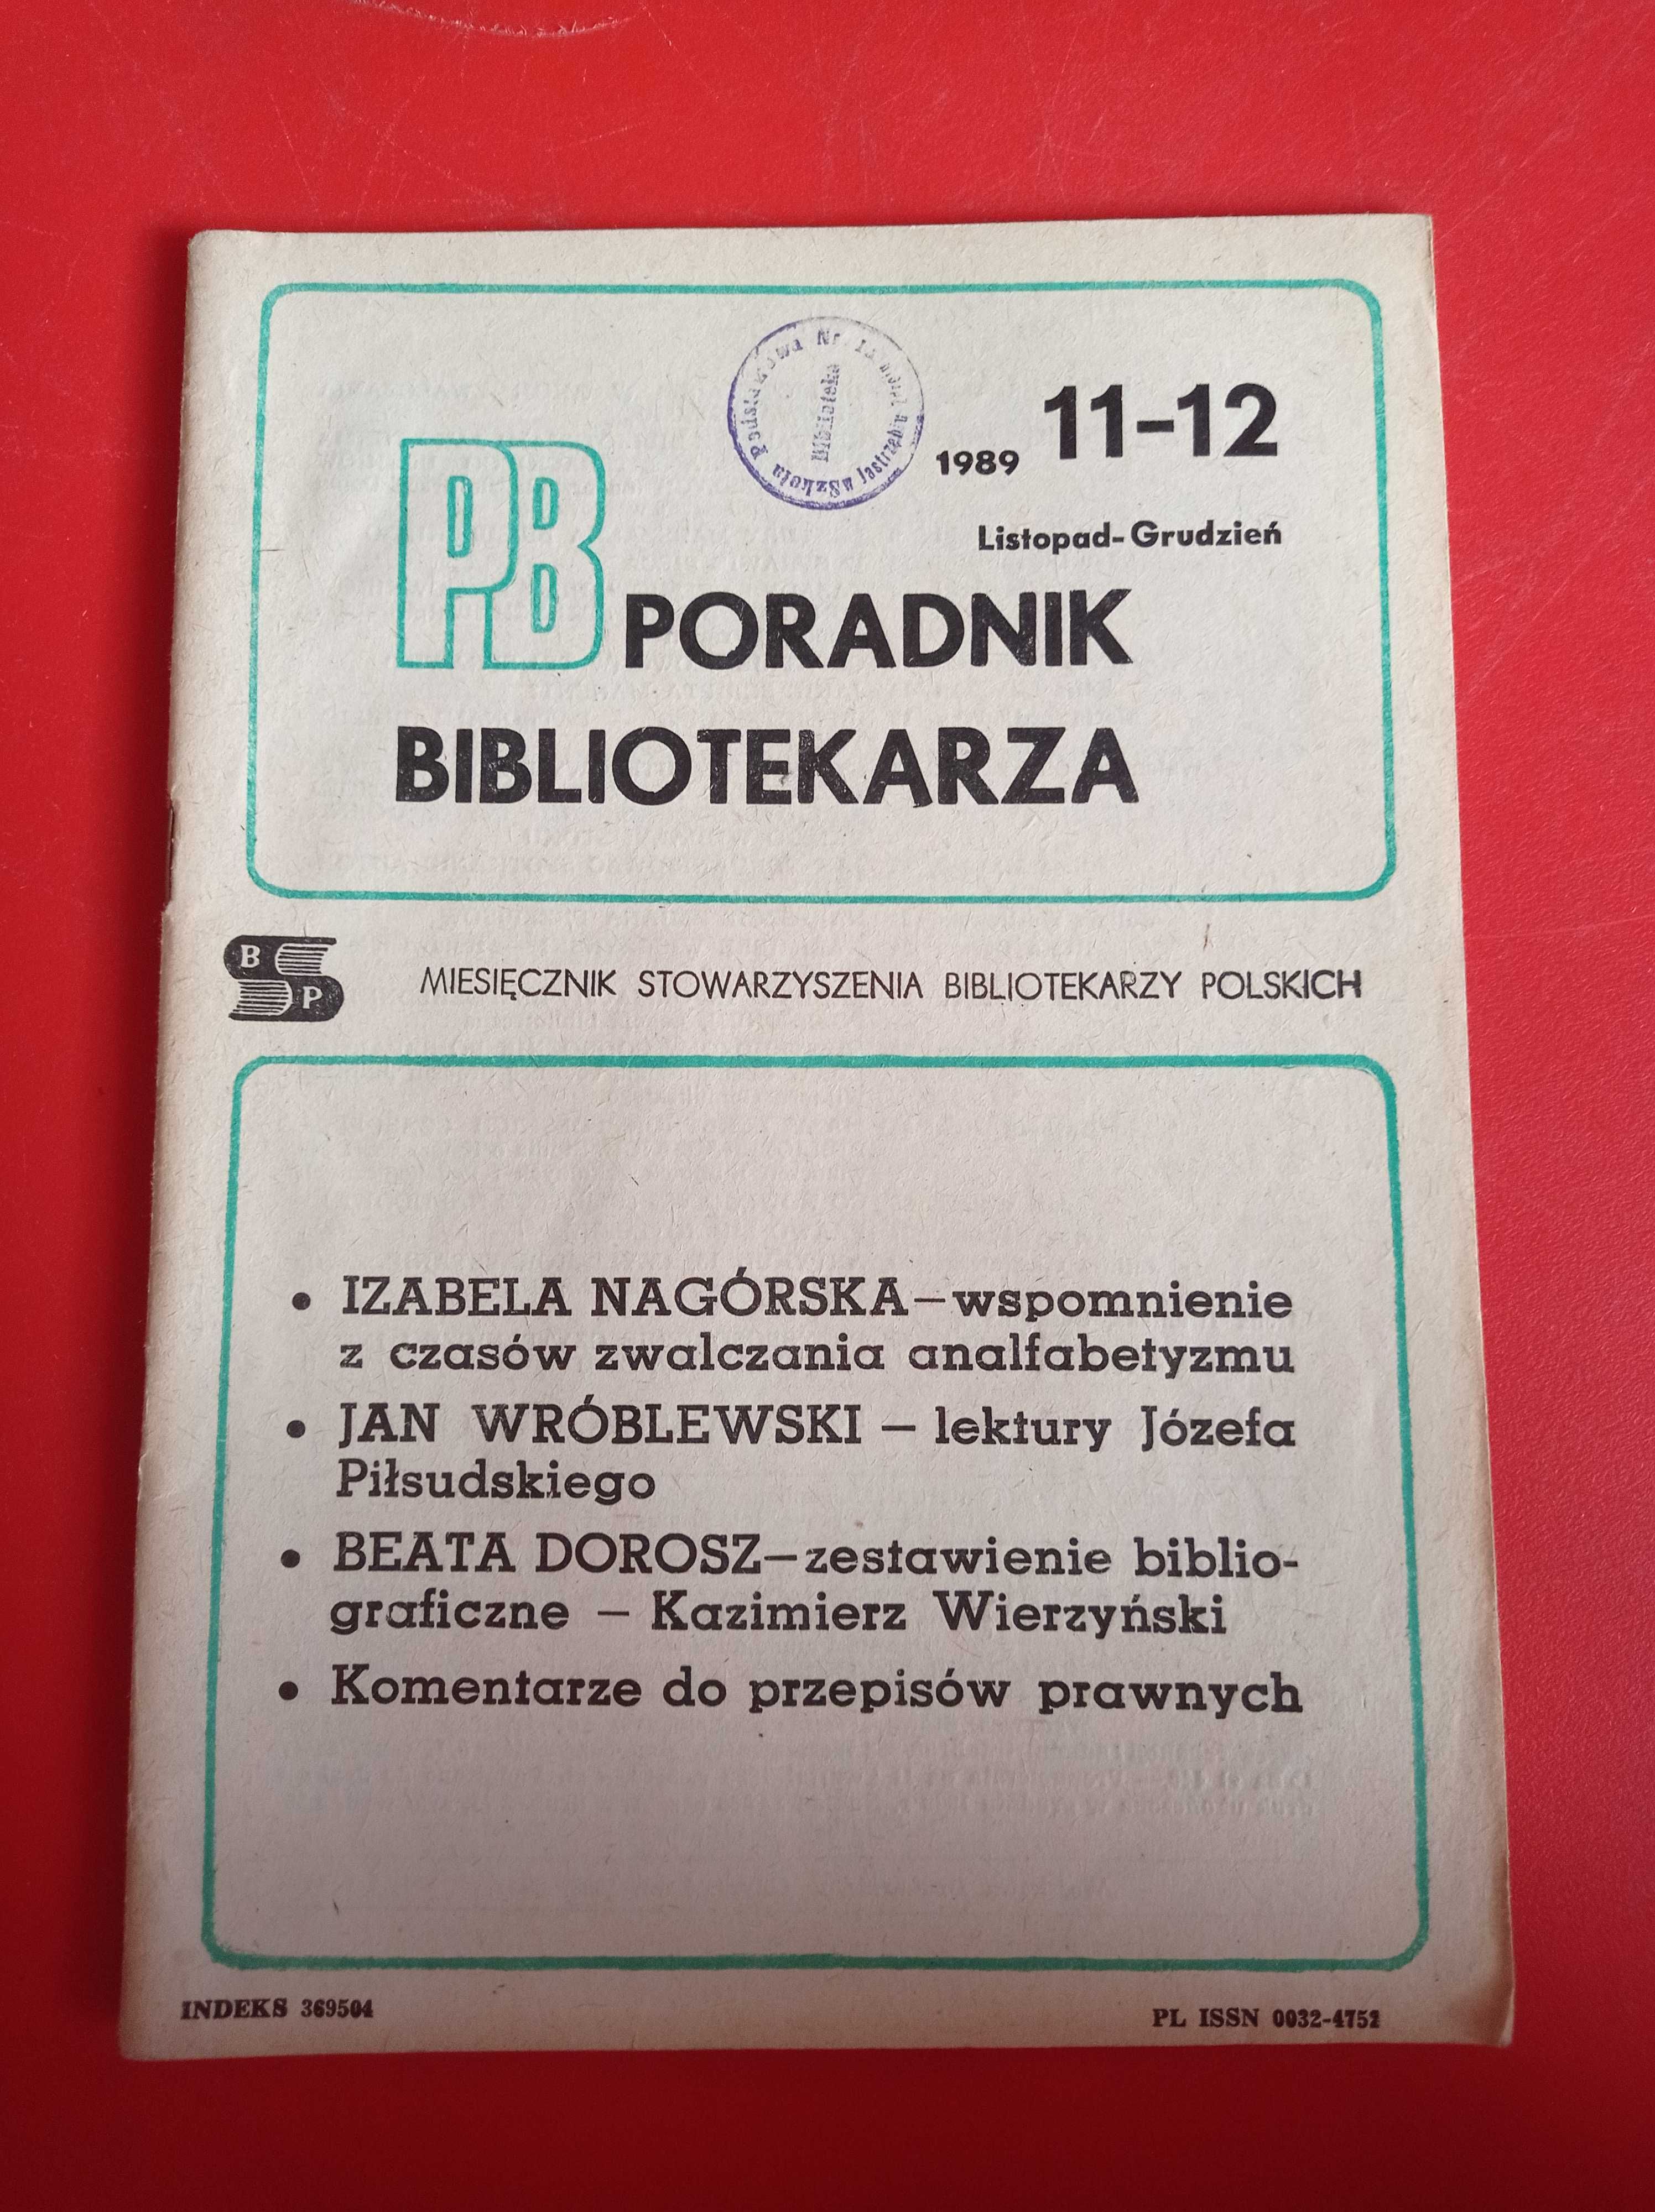 Poradnik Bibliotekarza, nr 11-12/1989, listopad-grudzień 1989